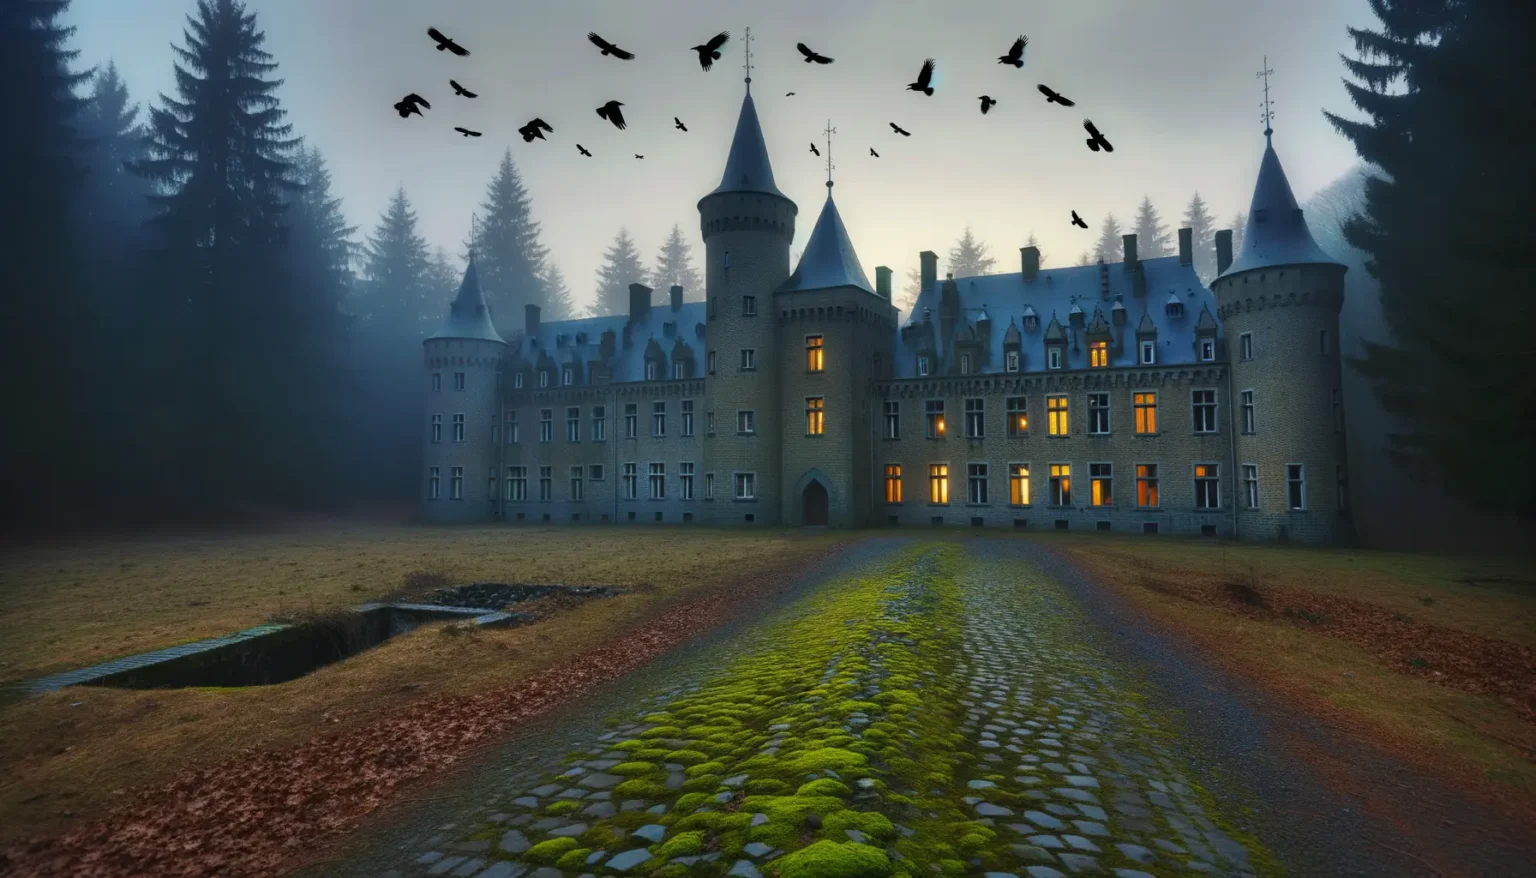 Ein imposantes Schloss mit mehreren Türmen und spitzen Dächern, beleuchteten Fenstern vor einem bewölkten Himmel im Zwielicht. Vor dem Schloss erstreckt sich ein Weg mit Moos bedeckt, flankiert von kahlen Bäumen. Über dem Schloss fliegen Vögel in den düsteren Himmel.